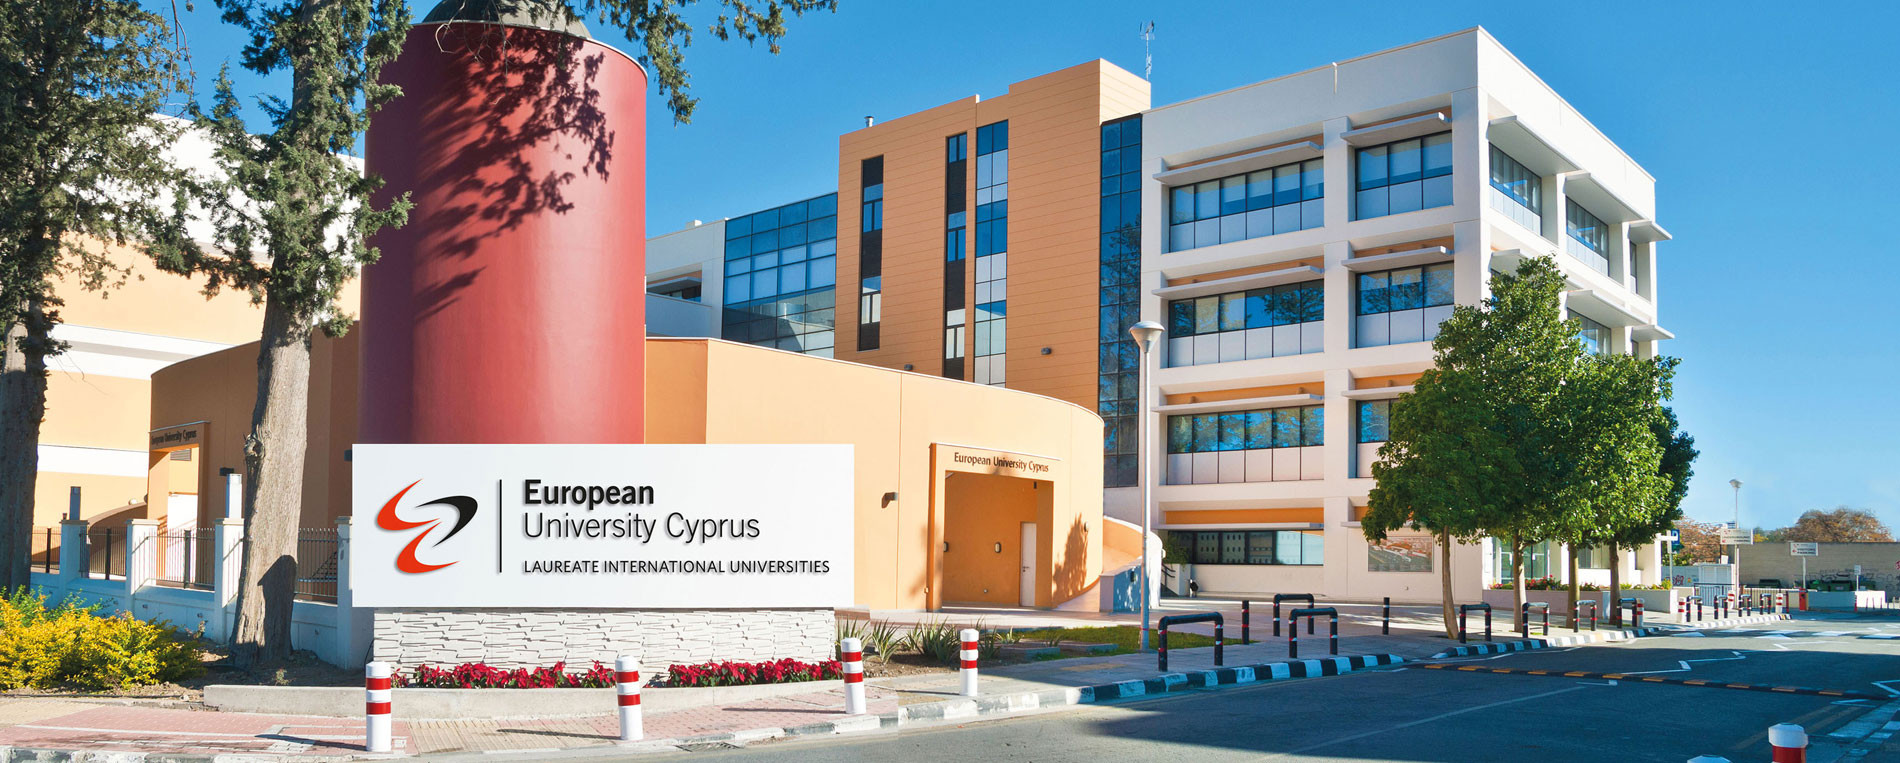 Εκδήλωση ενημέρωσης Νομικής Σχολής από το Ευρωπαϊκό Πανεπιστήμιο Κύπρου